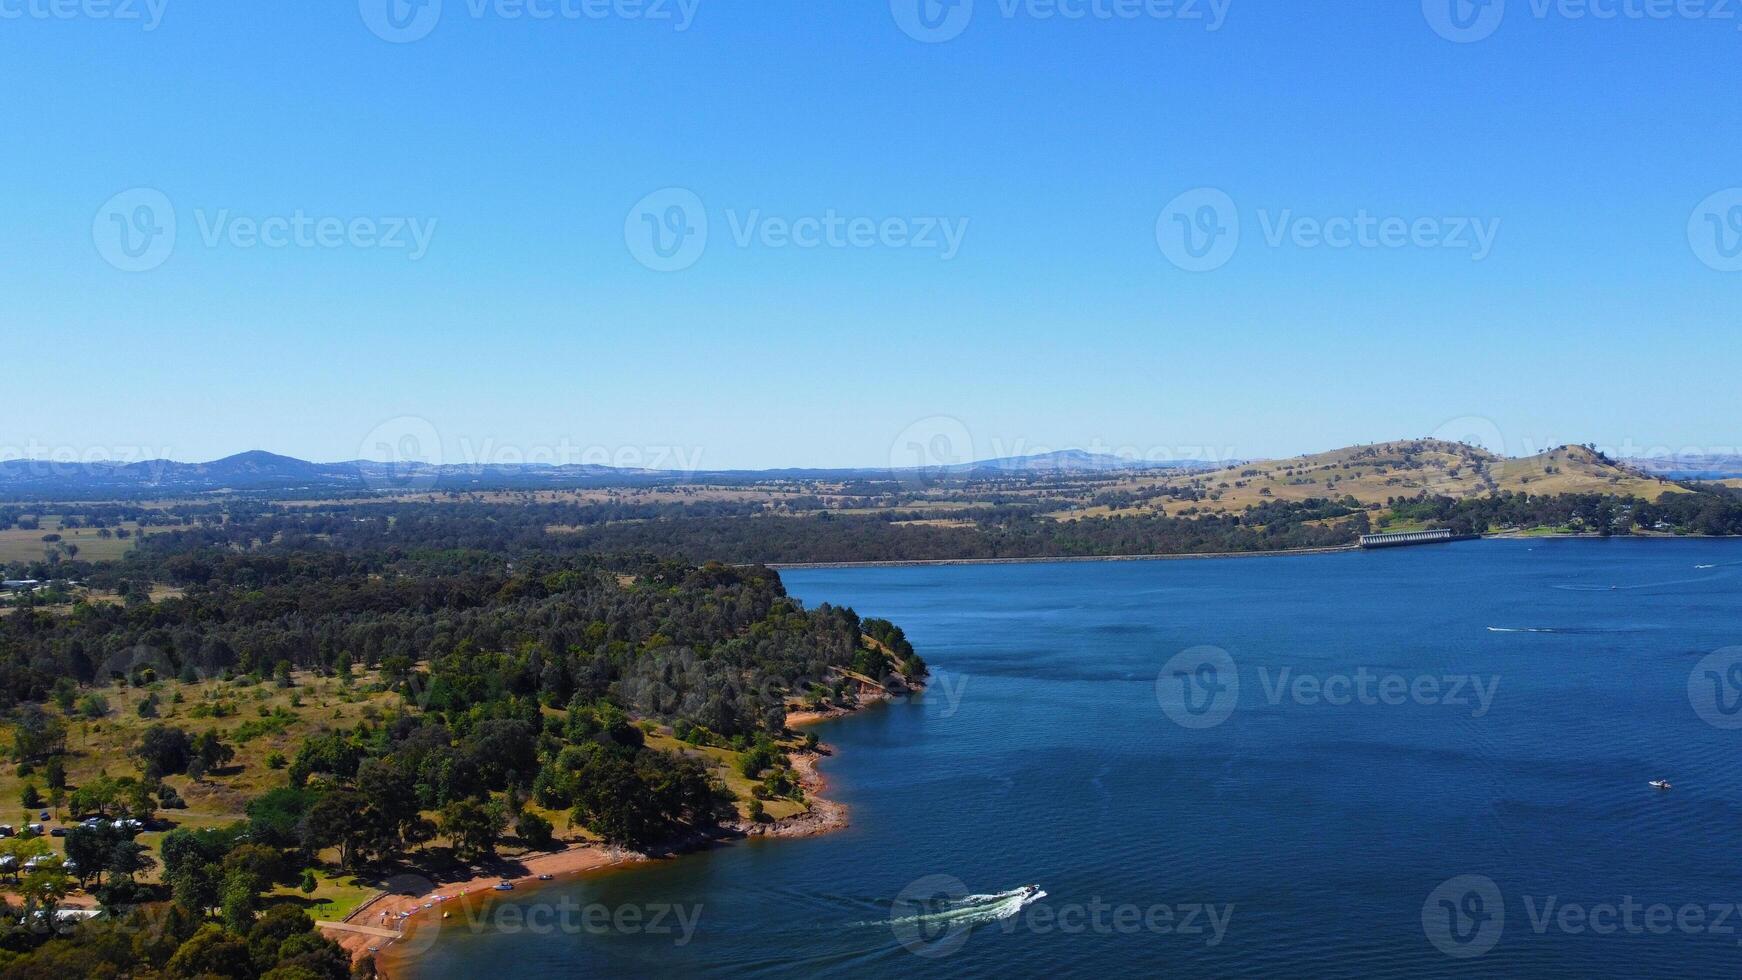 Antenne Aussicht von jacksons Punkt Bonegilla Victoria Australien mit Berg Aussicht und See Hume Wasser gehaltenen durch ein ehrfurchtgebietend Damm Mauer. foto